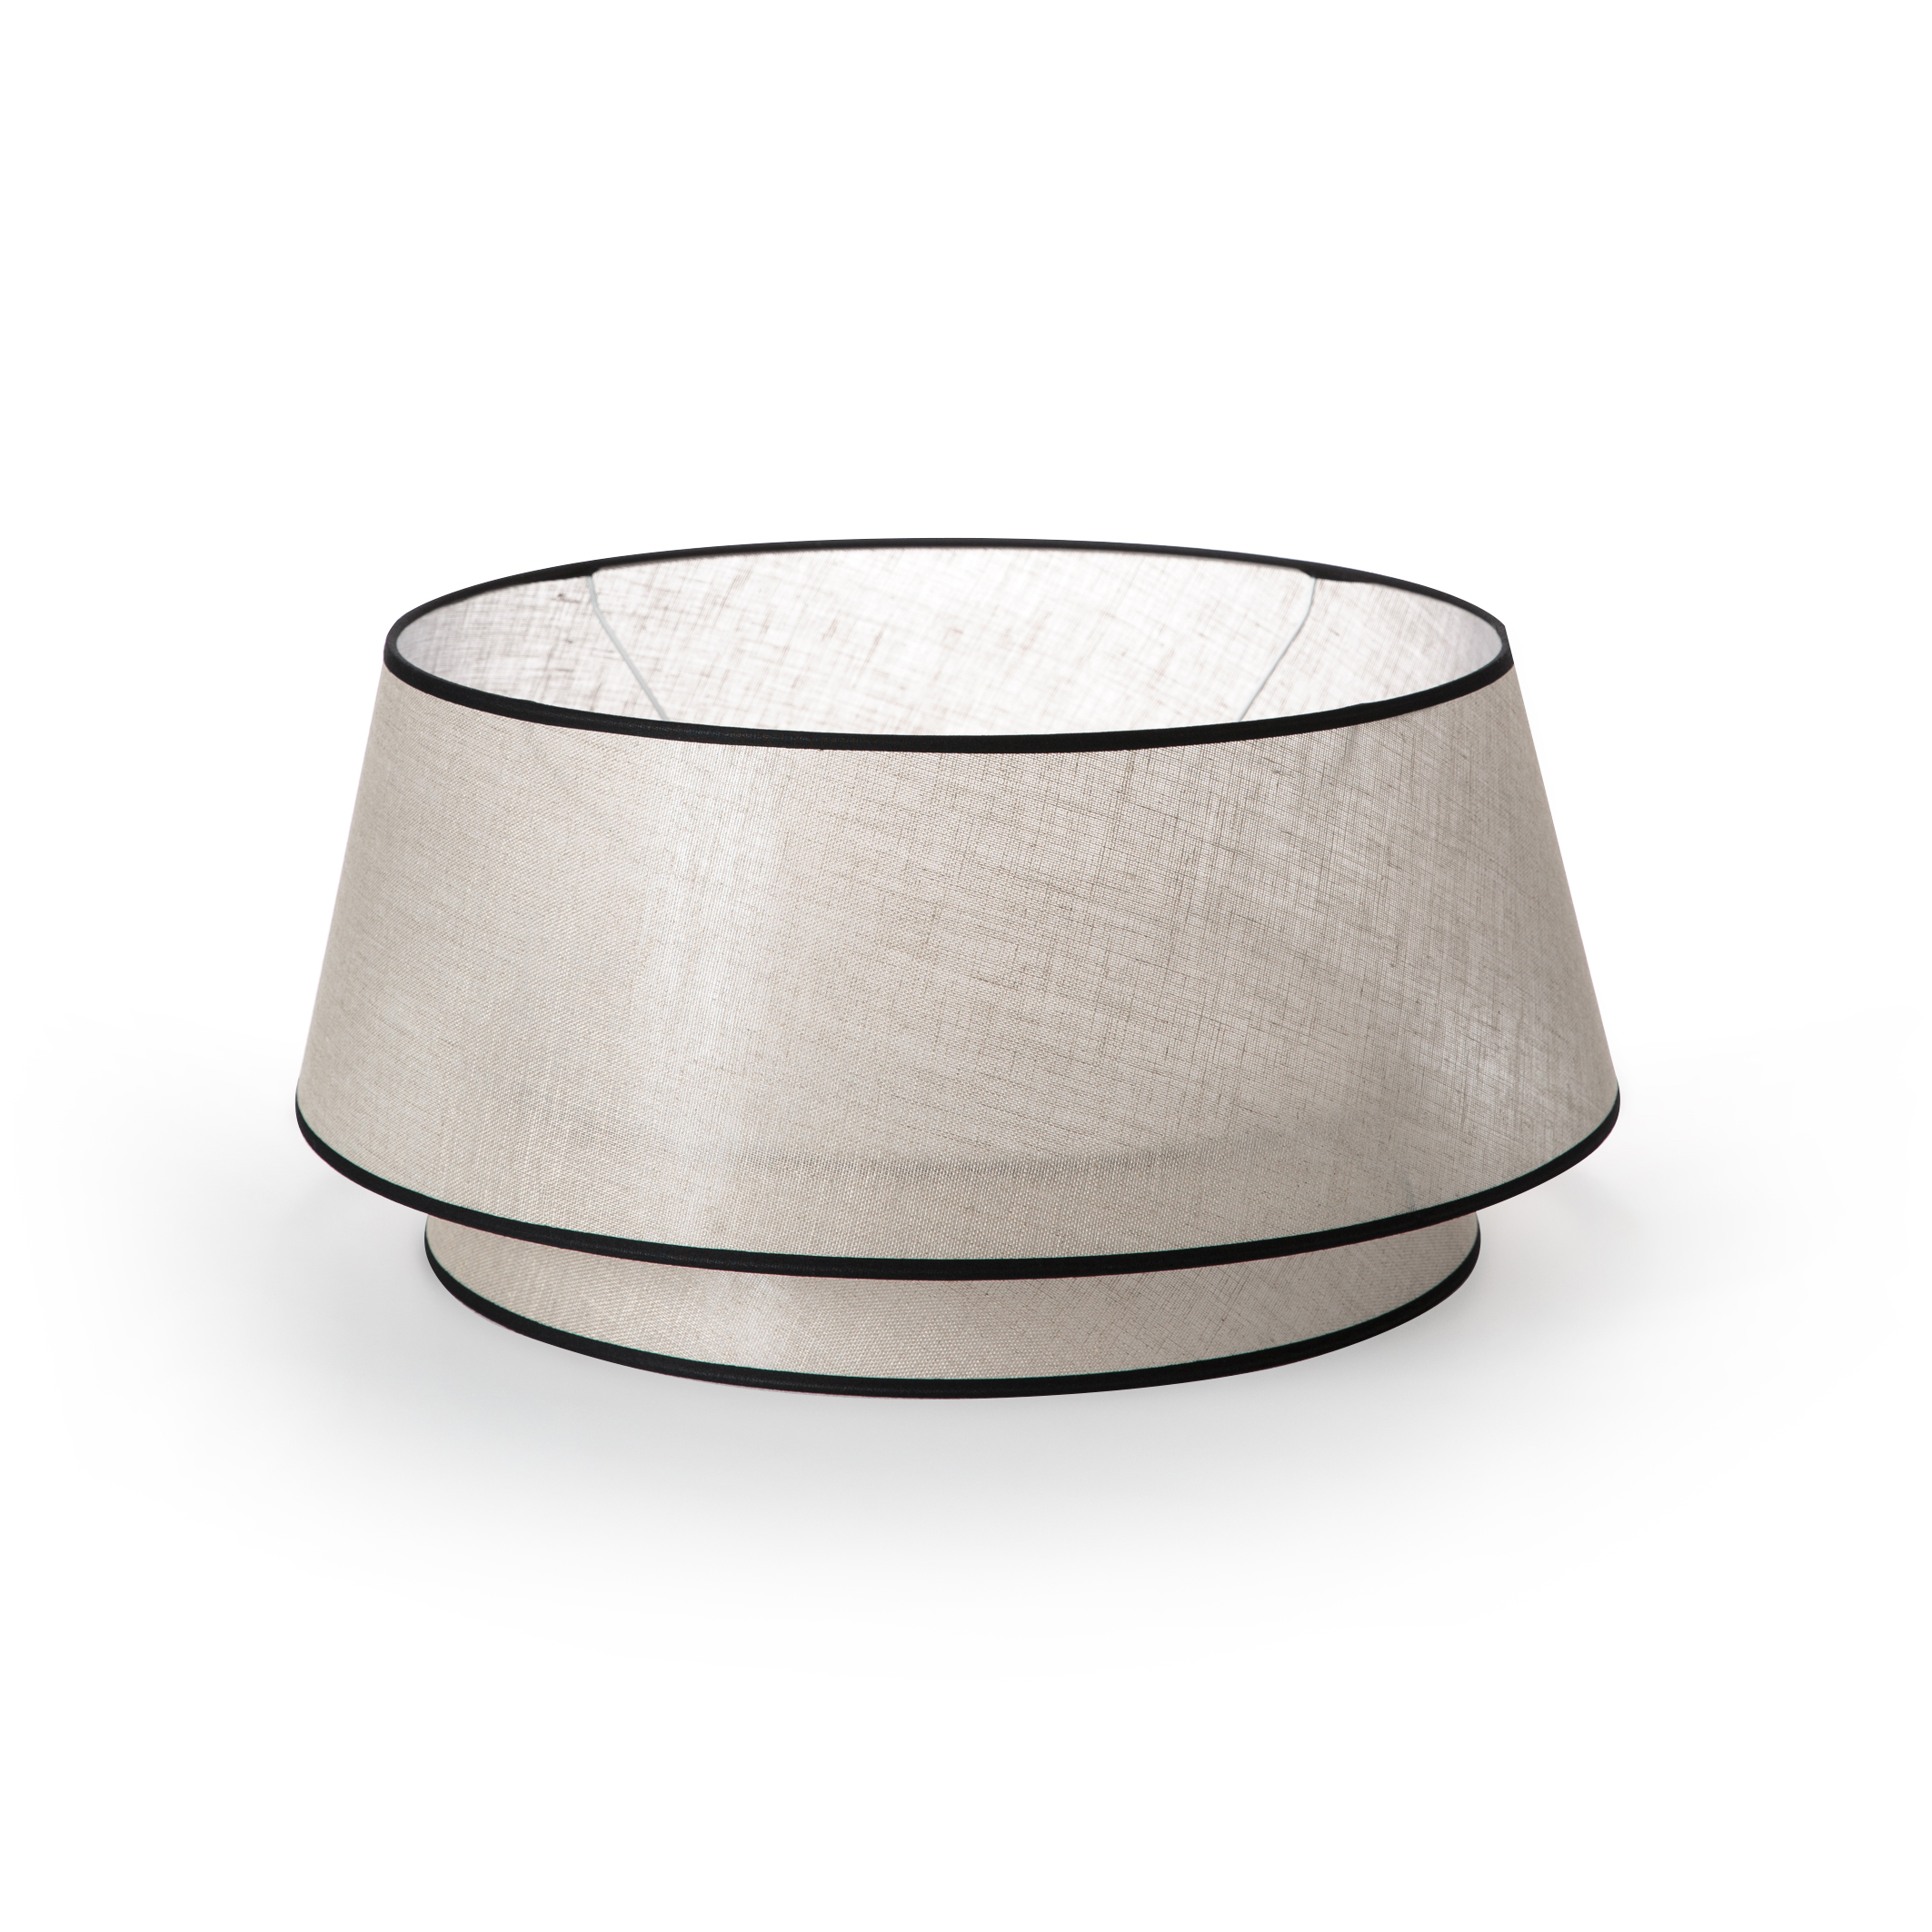 Prune rétro géométrique handmade imprimé tissu lampe tambour abat-jour 516